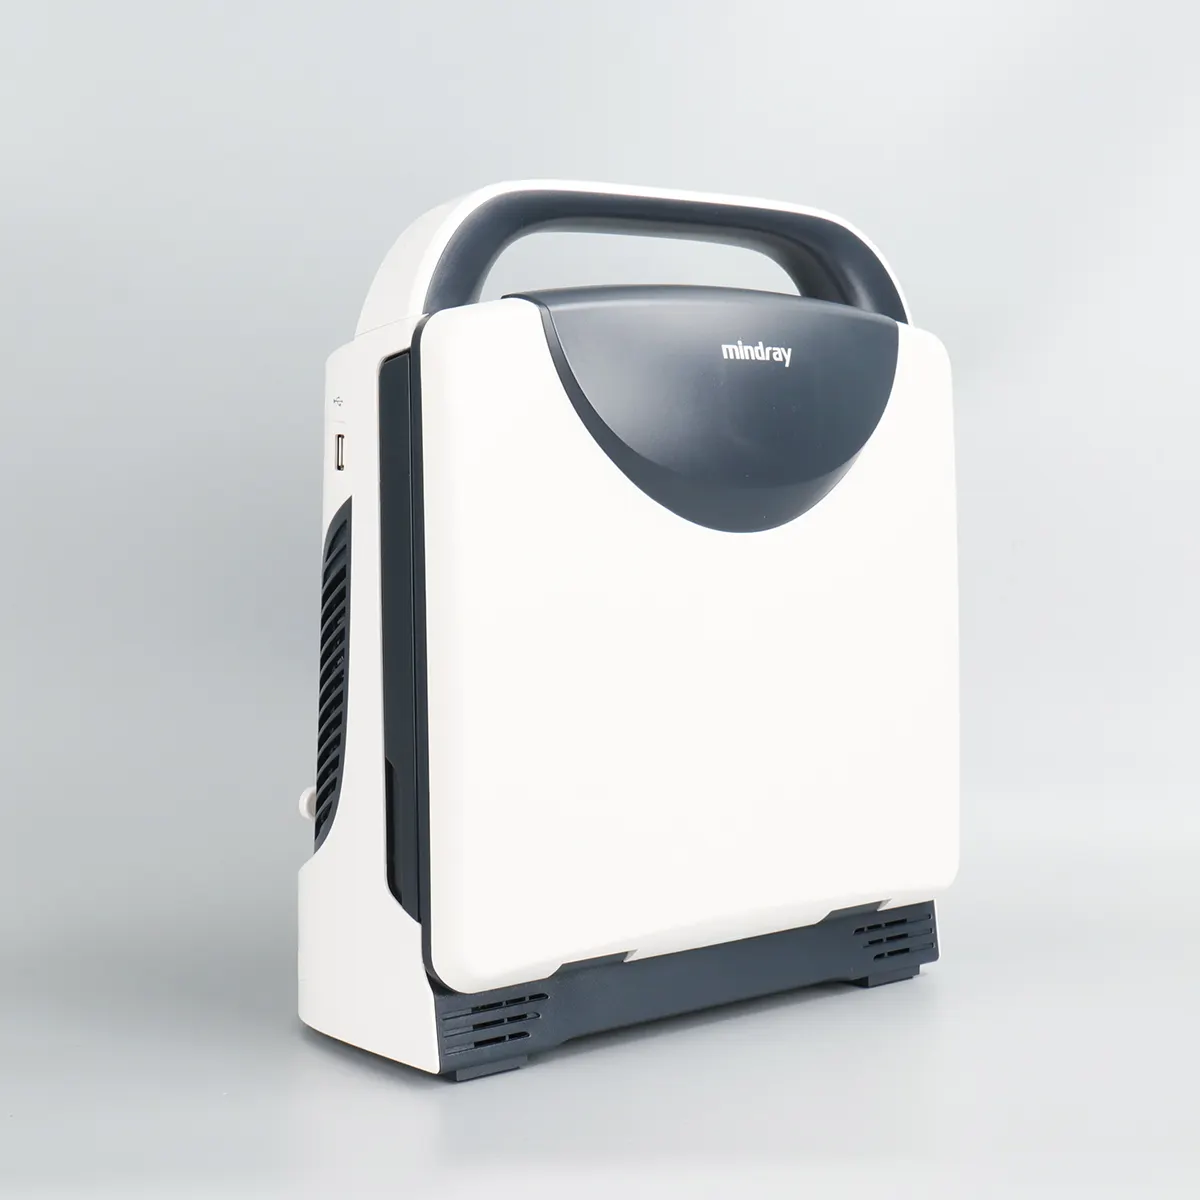 Mindray tragbares medizinisches Ultraschall gerät Sonografo Porta til Ecografo Mindray Dp 10 Ultraschall gerät